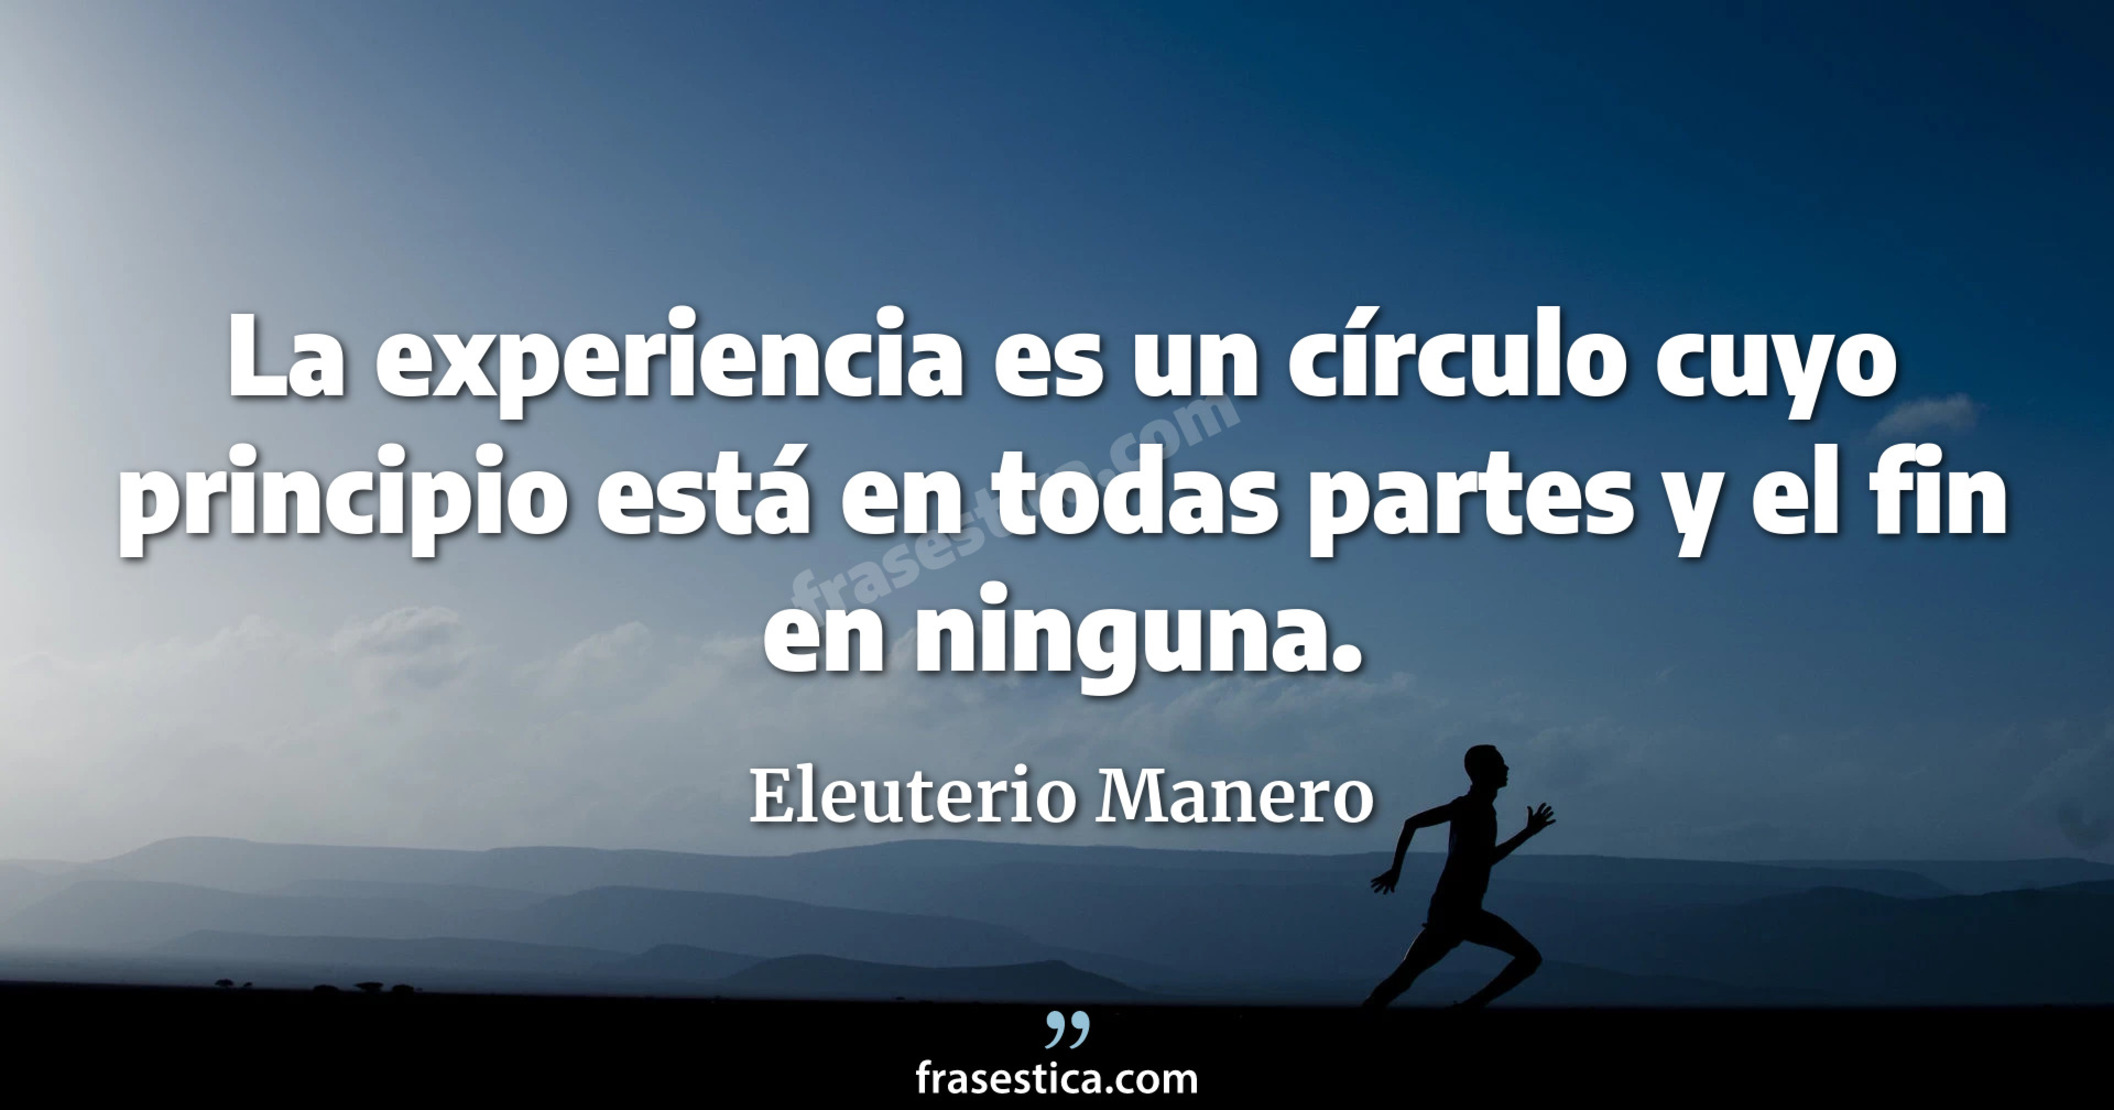 La experiencia es un círculo cuyo principio está en todas partes y el fin en ninguna. - Eleuterio Manero